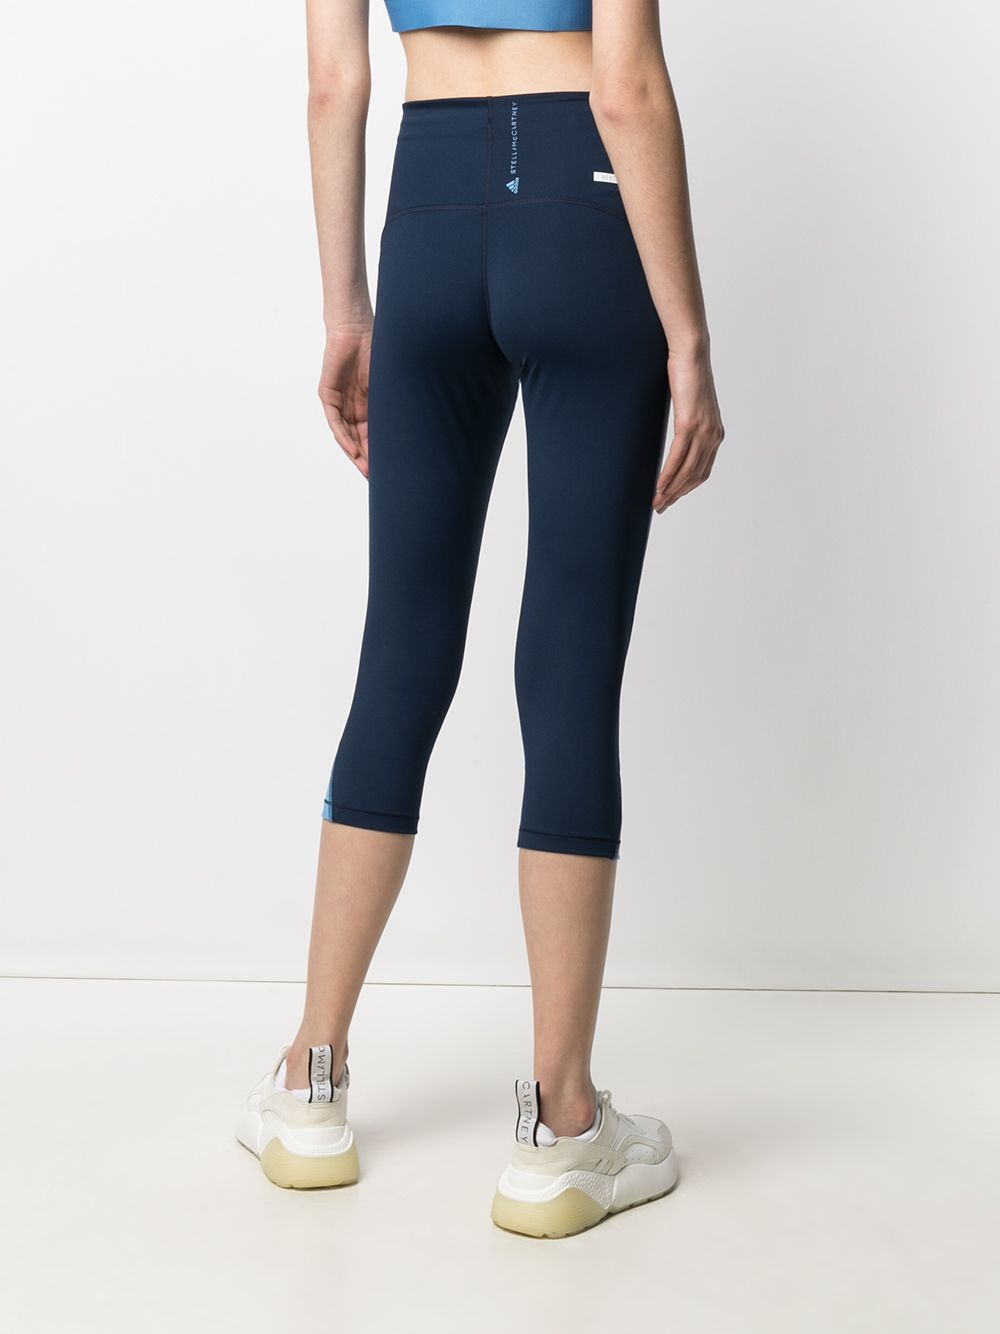 фото Adidas by stella mccartney укороченные брюки с контрастными вставками